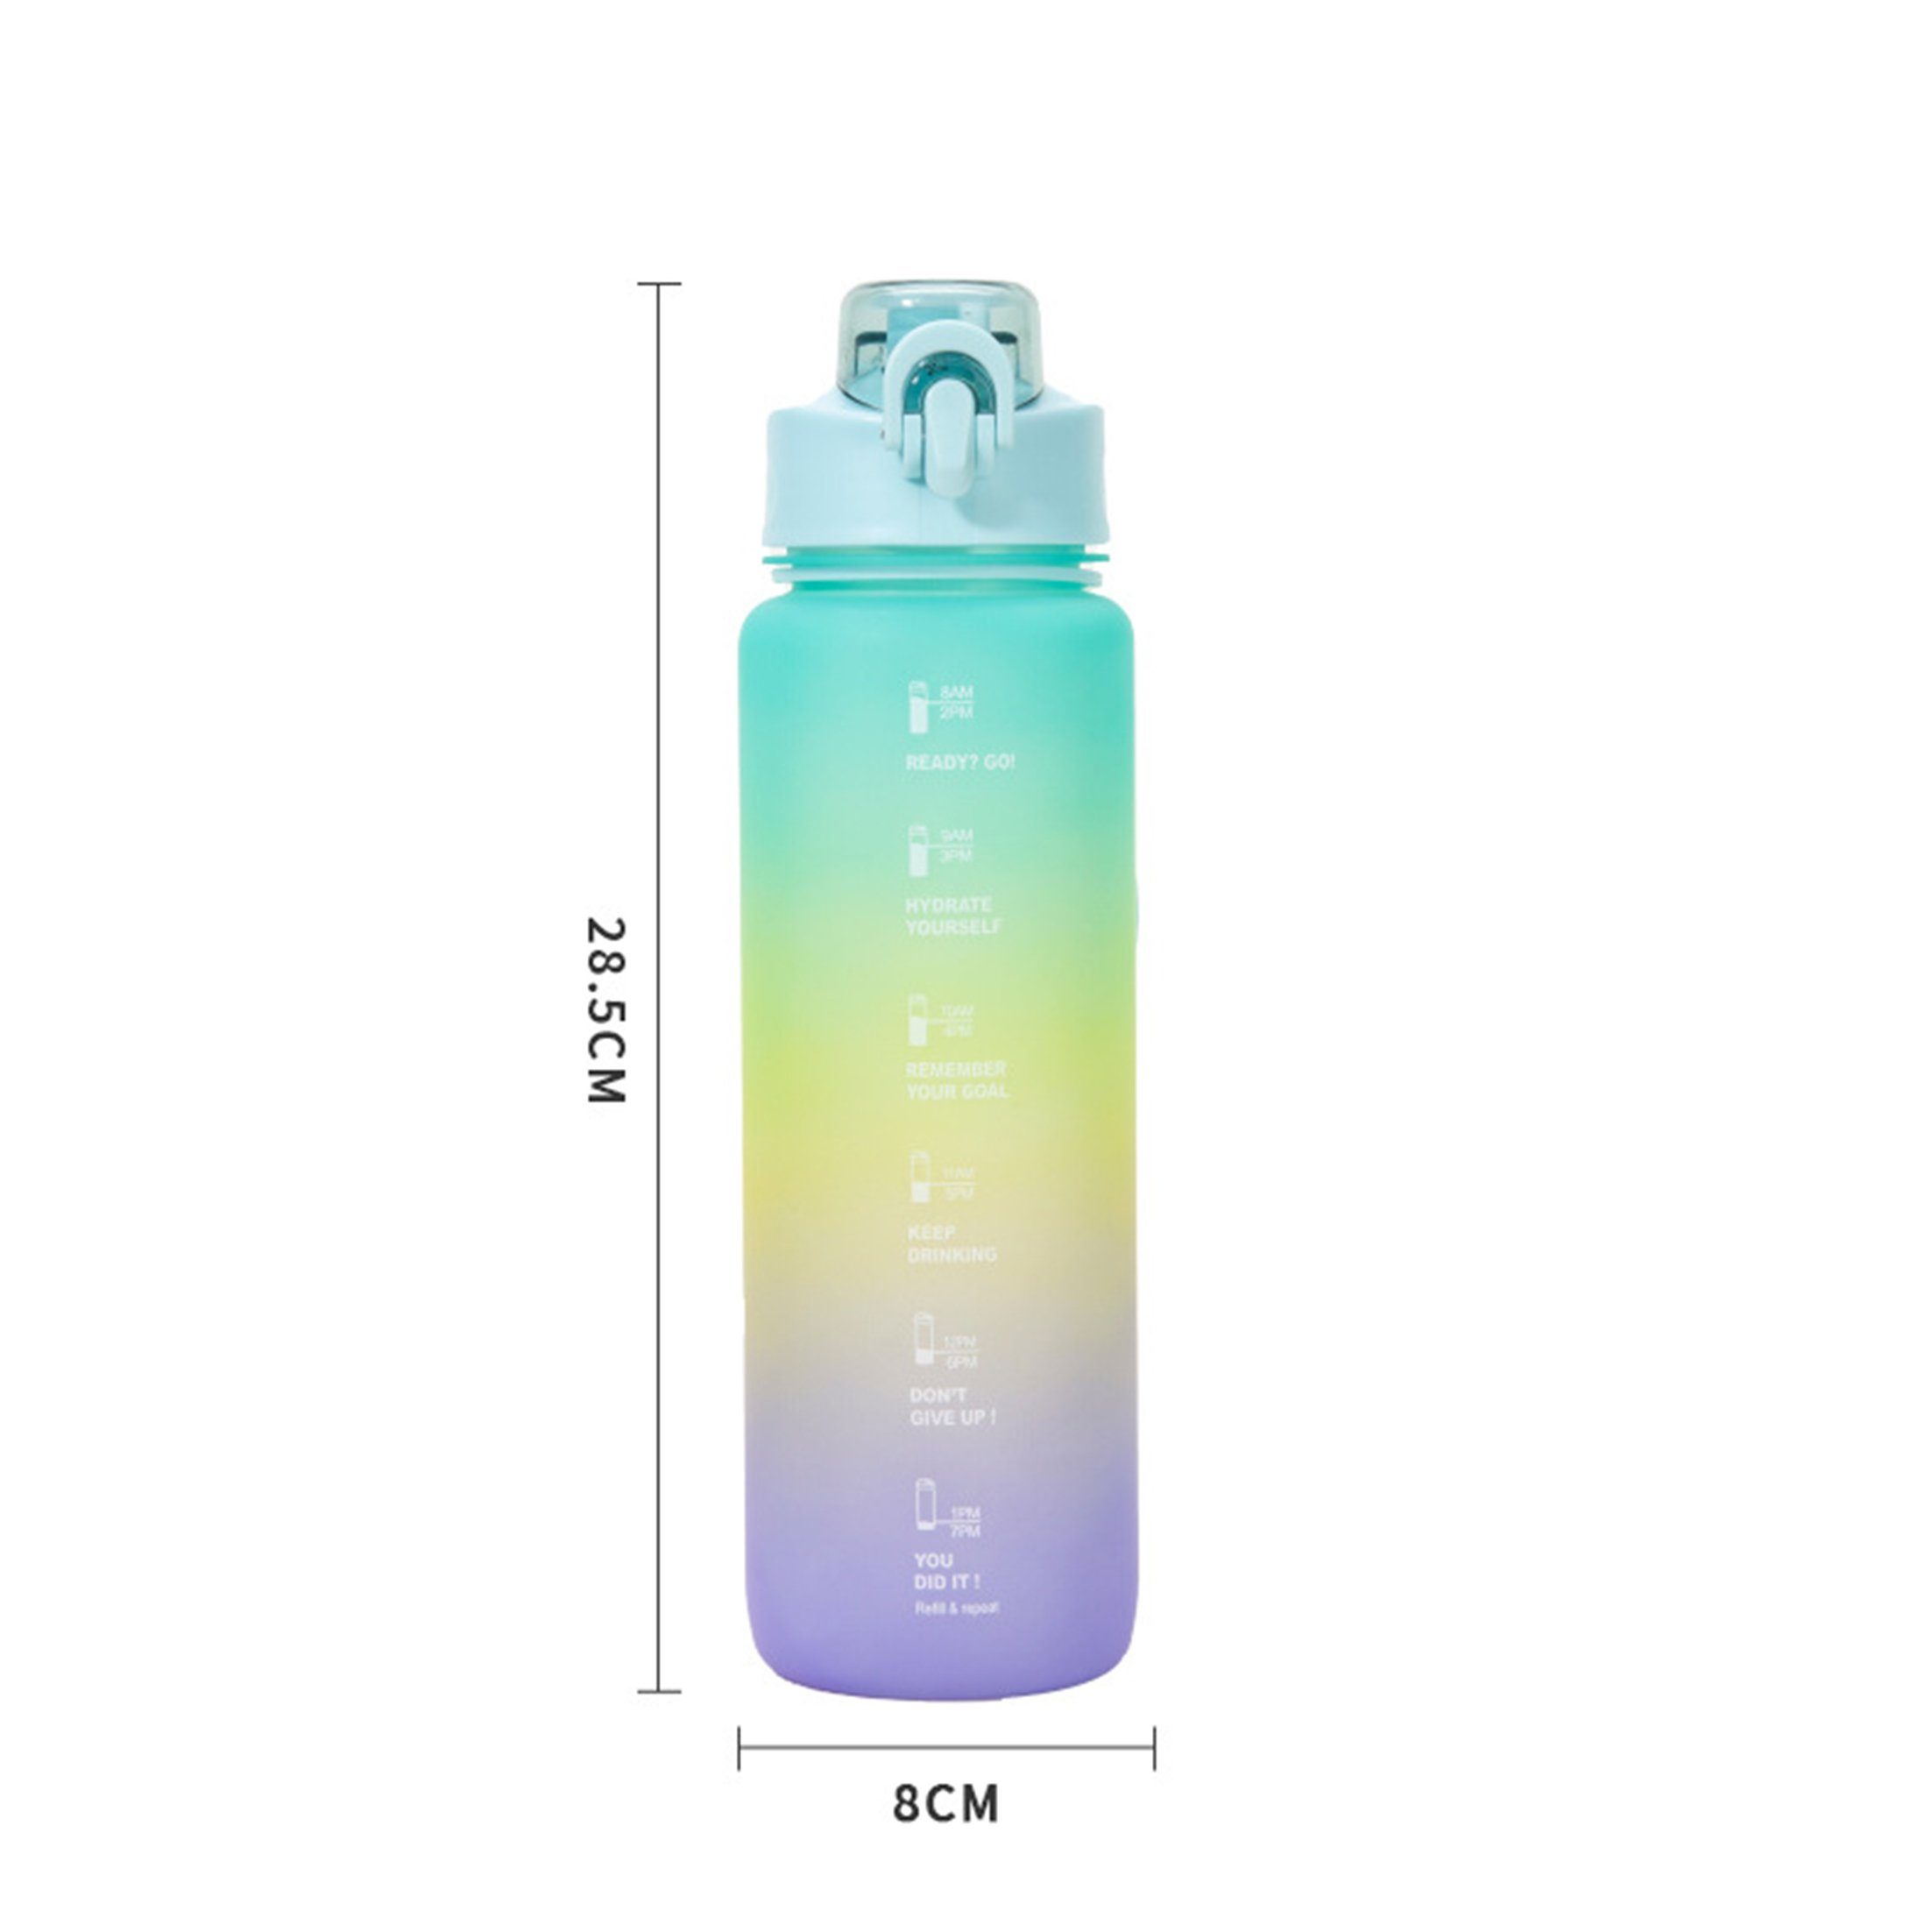 Sportflasche, mit Trinkflasche 1000ML Trinkflasche Farbverlauf Wasserflasche und Wasserflasche, Auslaufsicher, Grauer Zeitstempel LeiGo mit Trinkflasche, Strohhalm